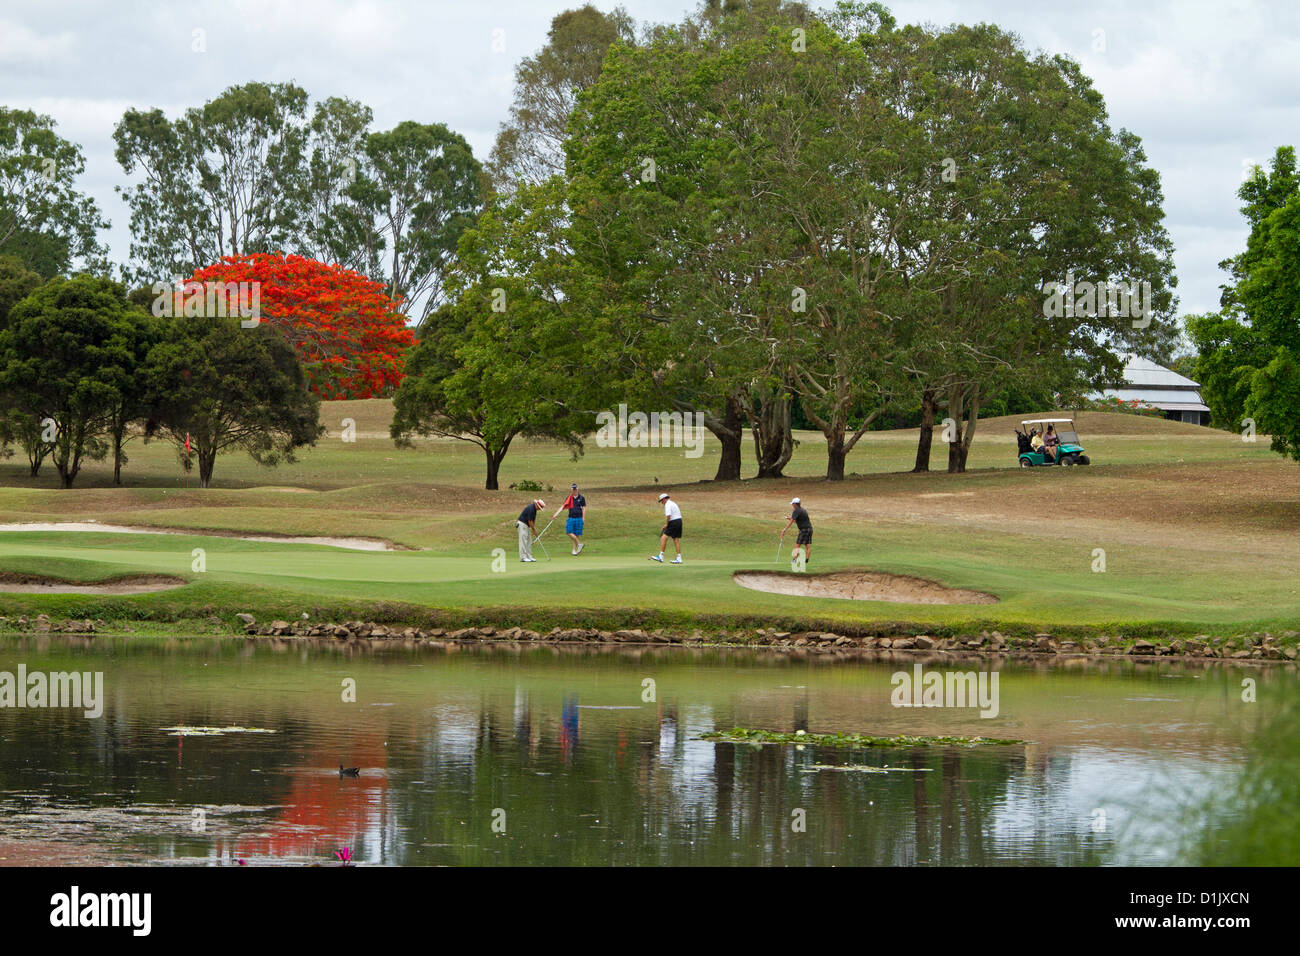 Grupo de golfistas jugando junto al lago, en el pintoresco campo de golf con los árboles y las personas se refleja en el agua Foto de stock